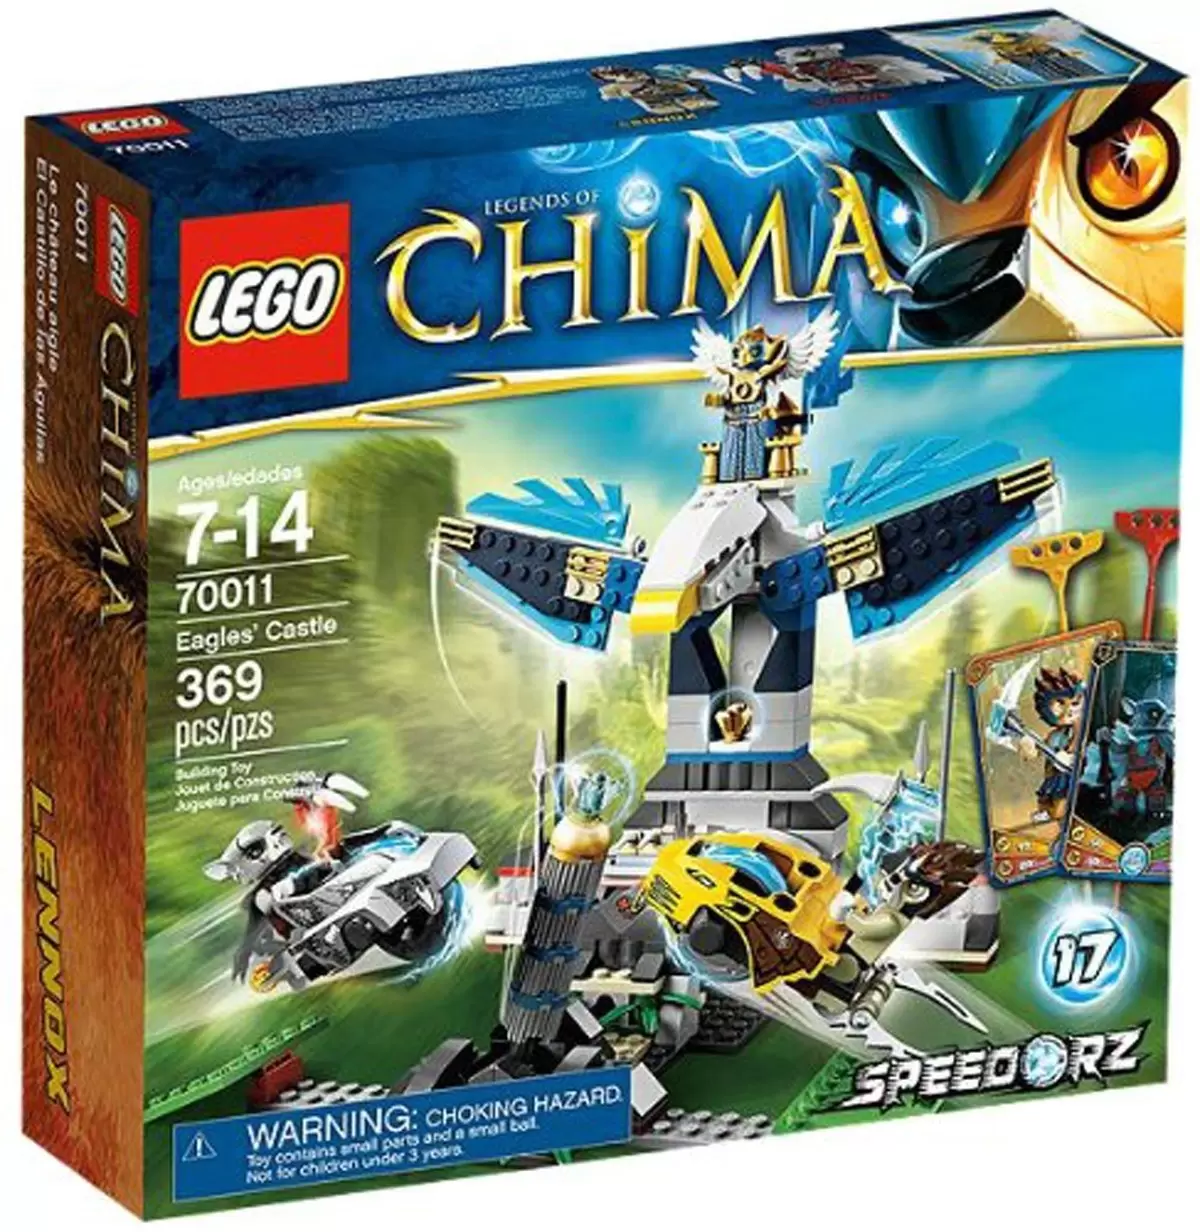 Addiction Sandsynligvis Skeptisk Eagles' Castle - LEGO Legends of Chima set 70011